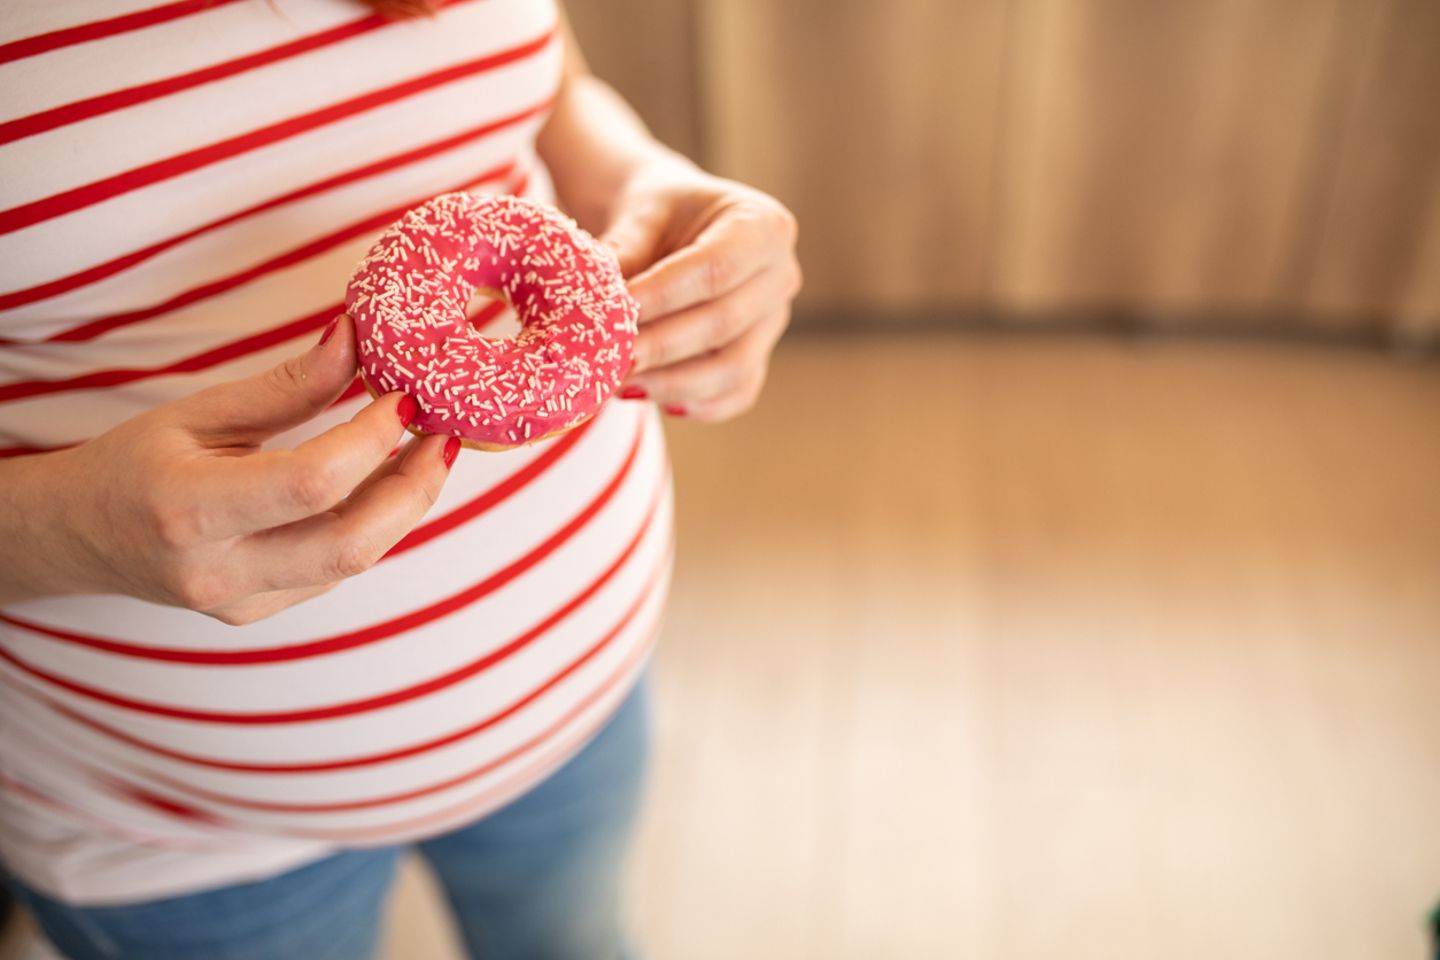 Schwangere Frau hlt einen Donut mit Zucker vor sich